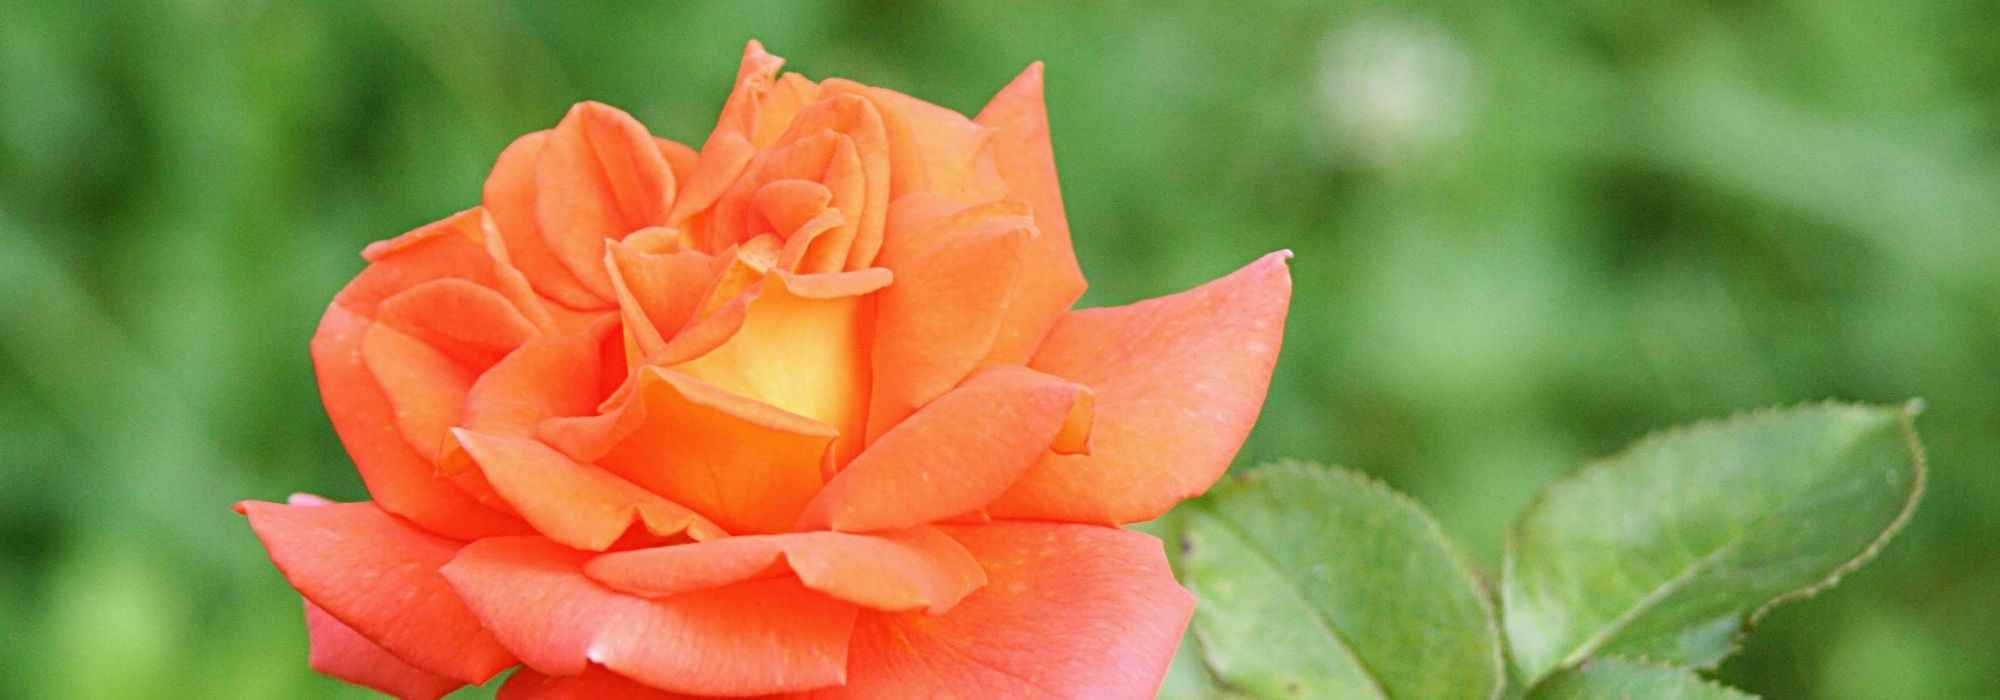 7 rosiers buissons à grandes fleurs orange